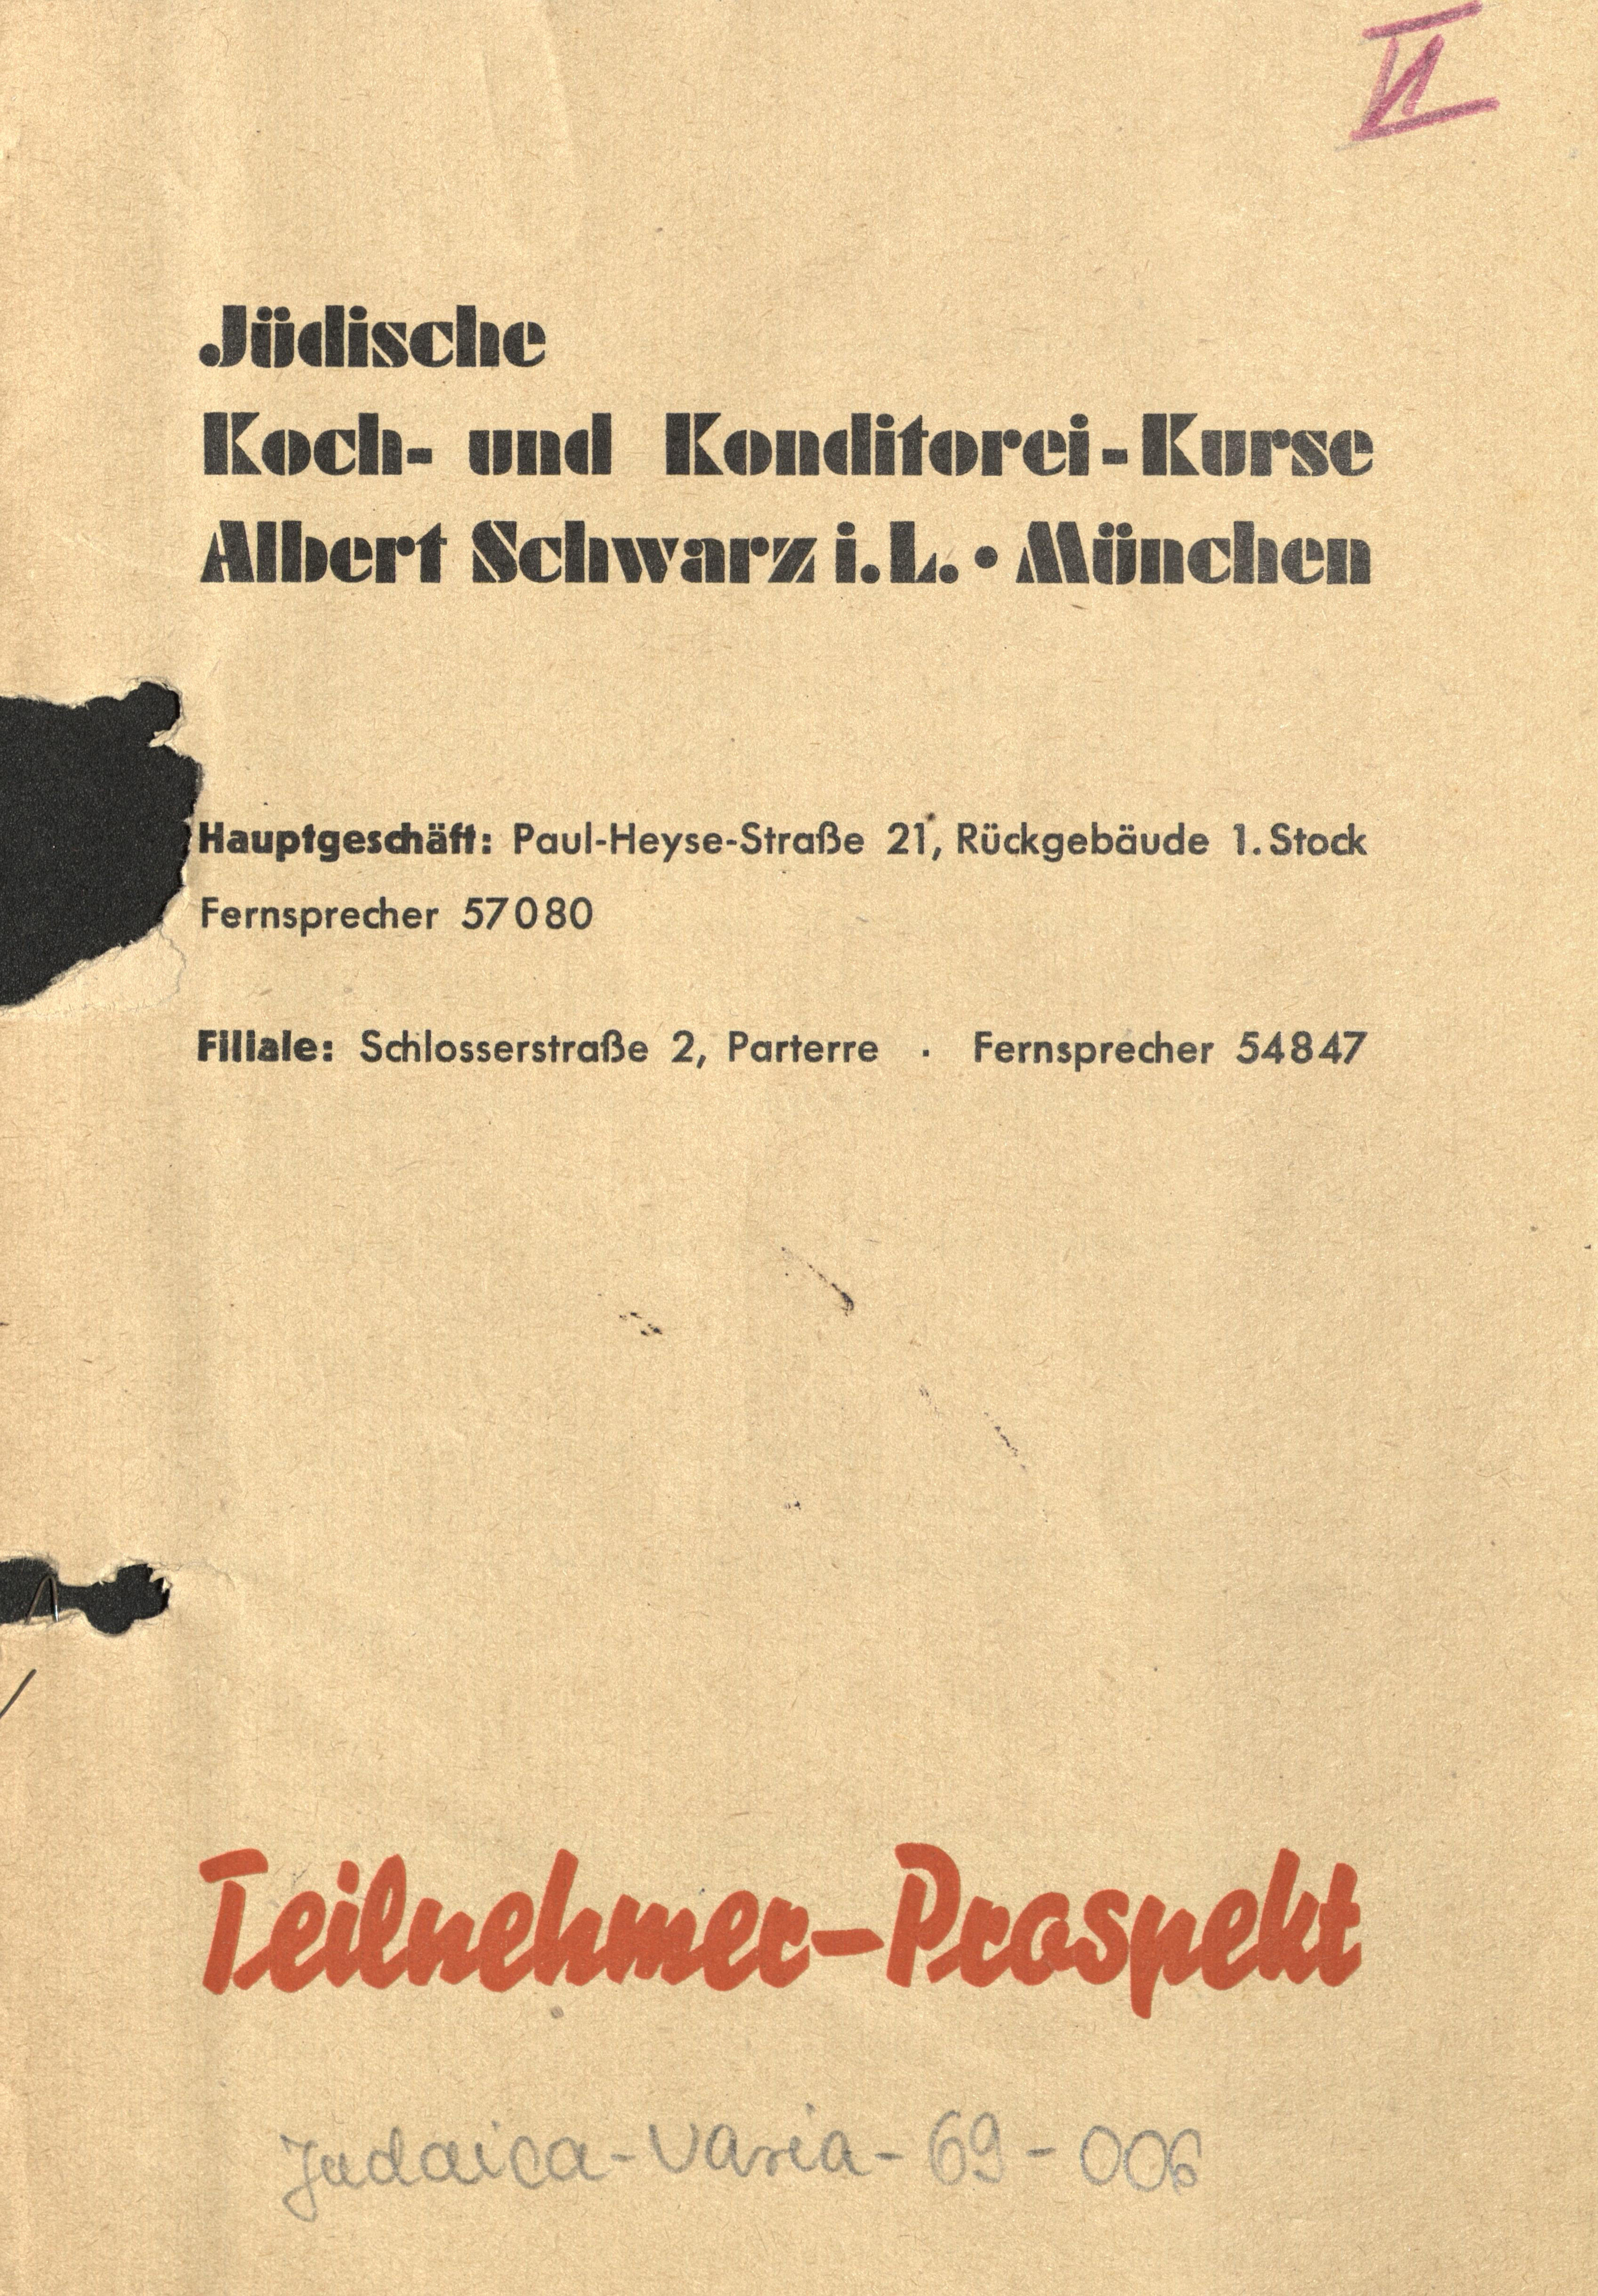 Prospekt der Kochschule Schwarz, um 1939 (© Stadtarchiv München)